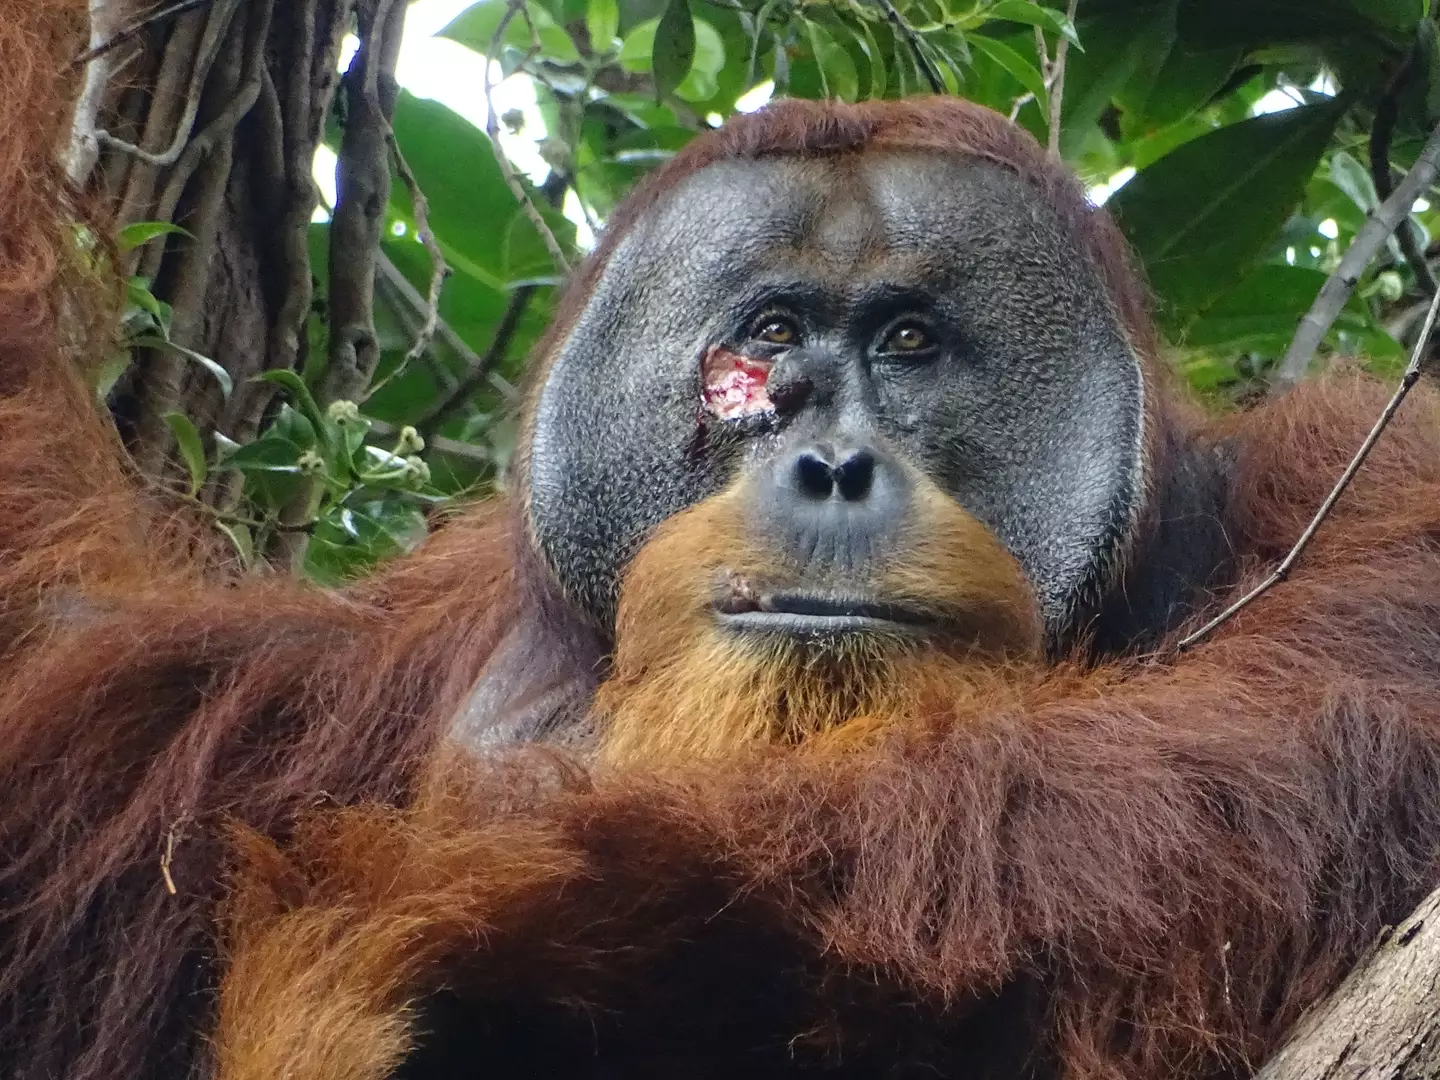 The Orangutan treated his face. (Max Planck Institute of Animal Behavior)